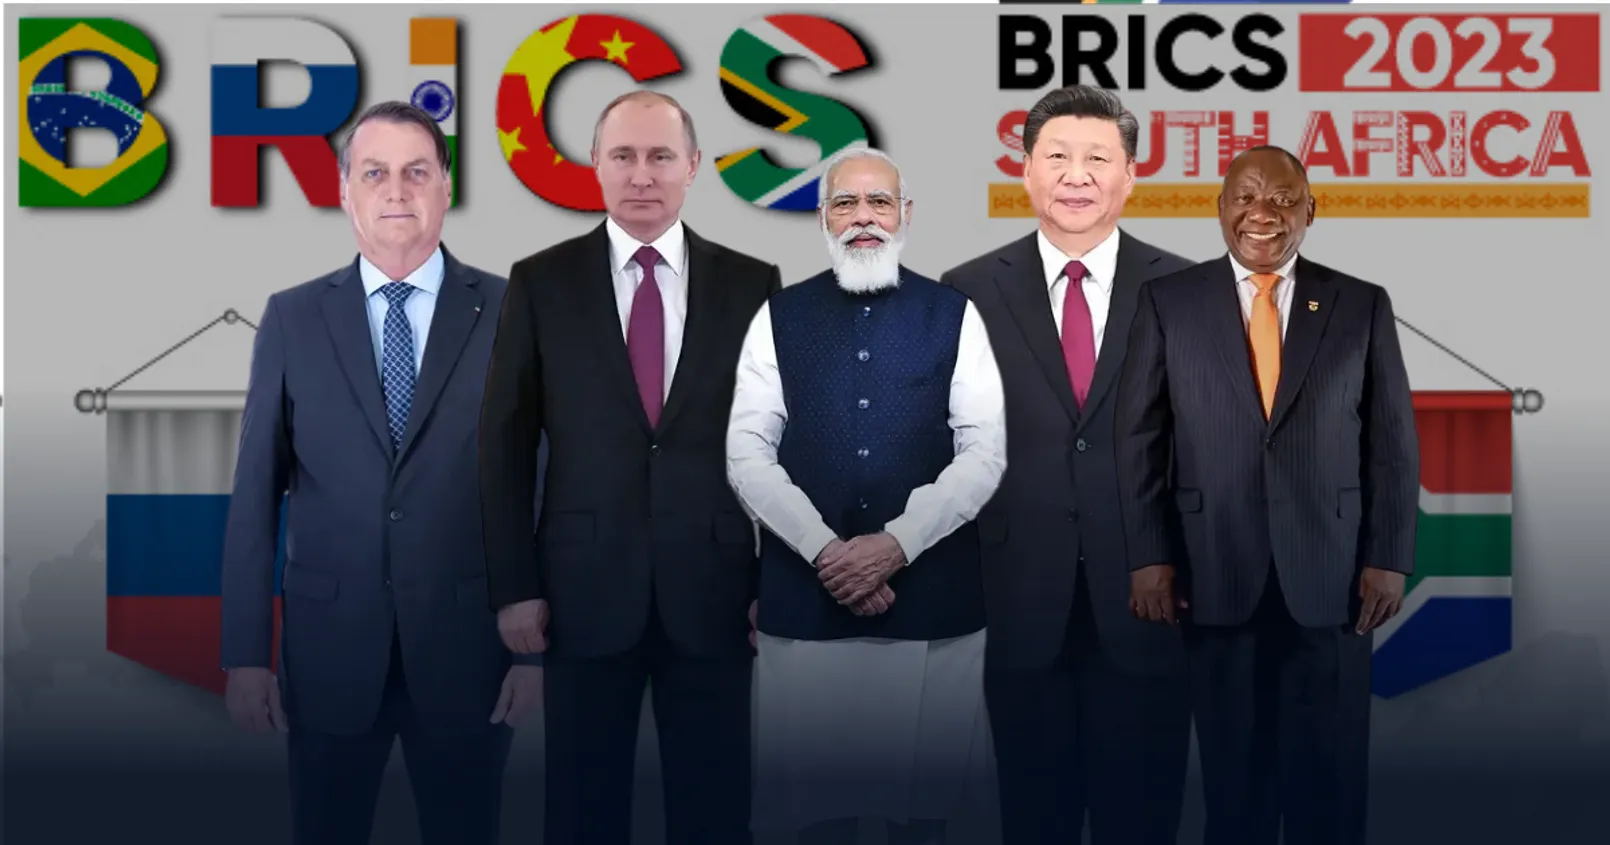 ประกาศวันจัดงาน 'BRICS Summit' เพื่อพูดคุยถึงการสร้างสกุลเงินใหม่